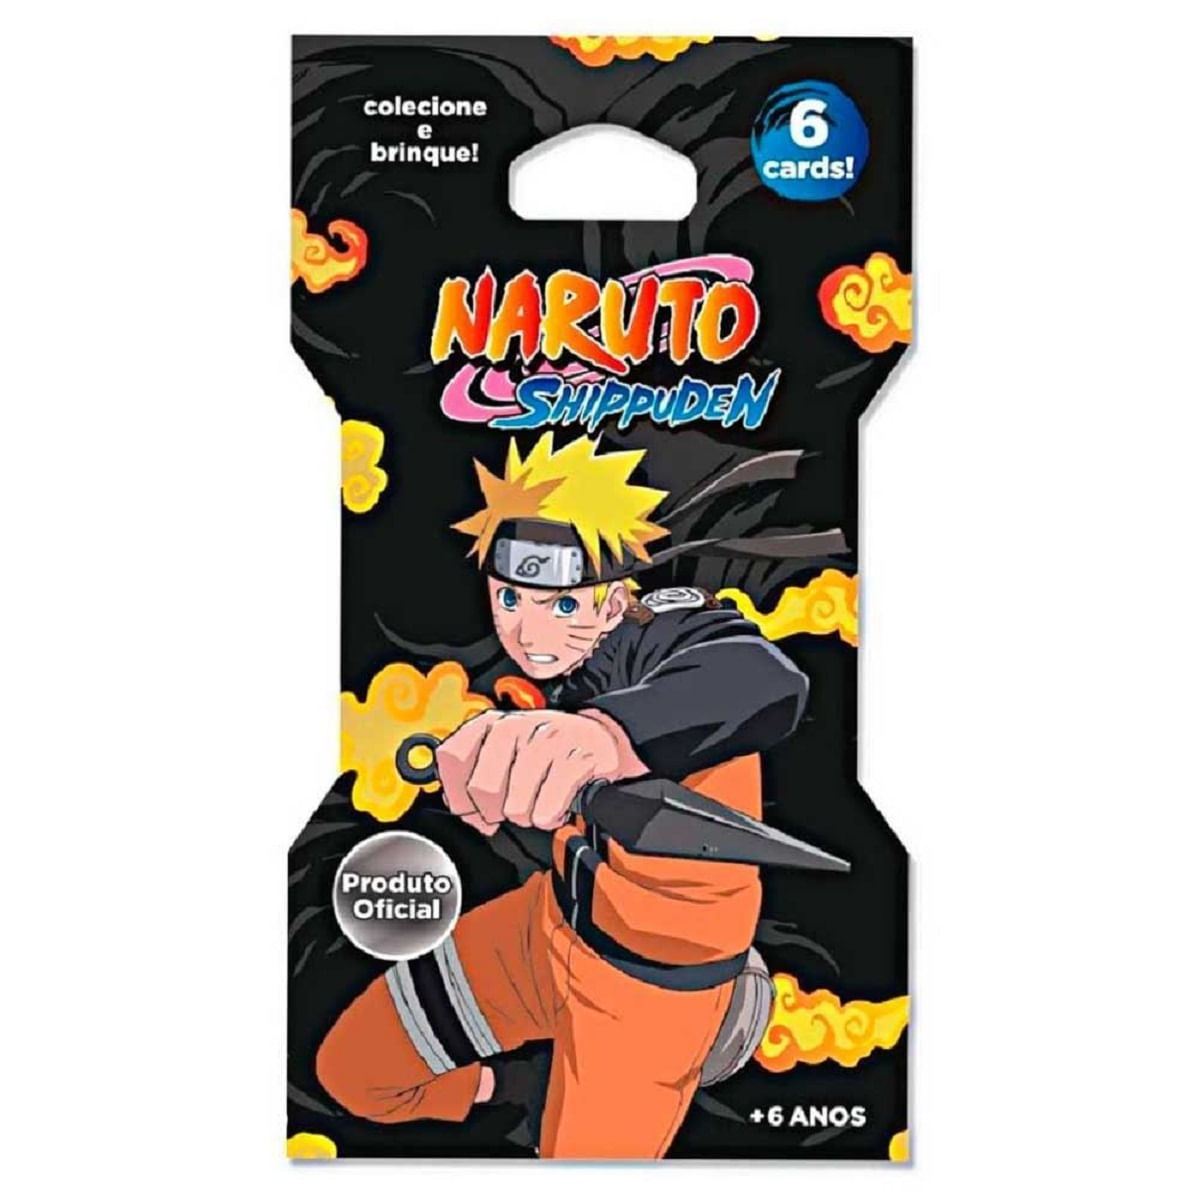 Quebra Cabeça Do Naruto C/200 Peças 2 Formas De Montar - Elka